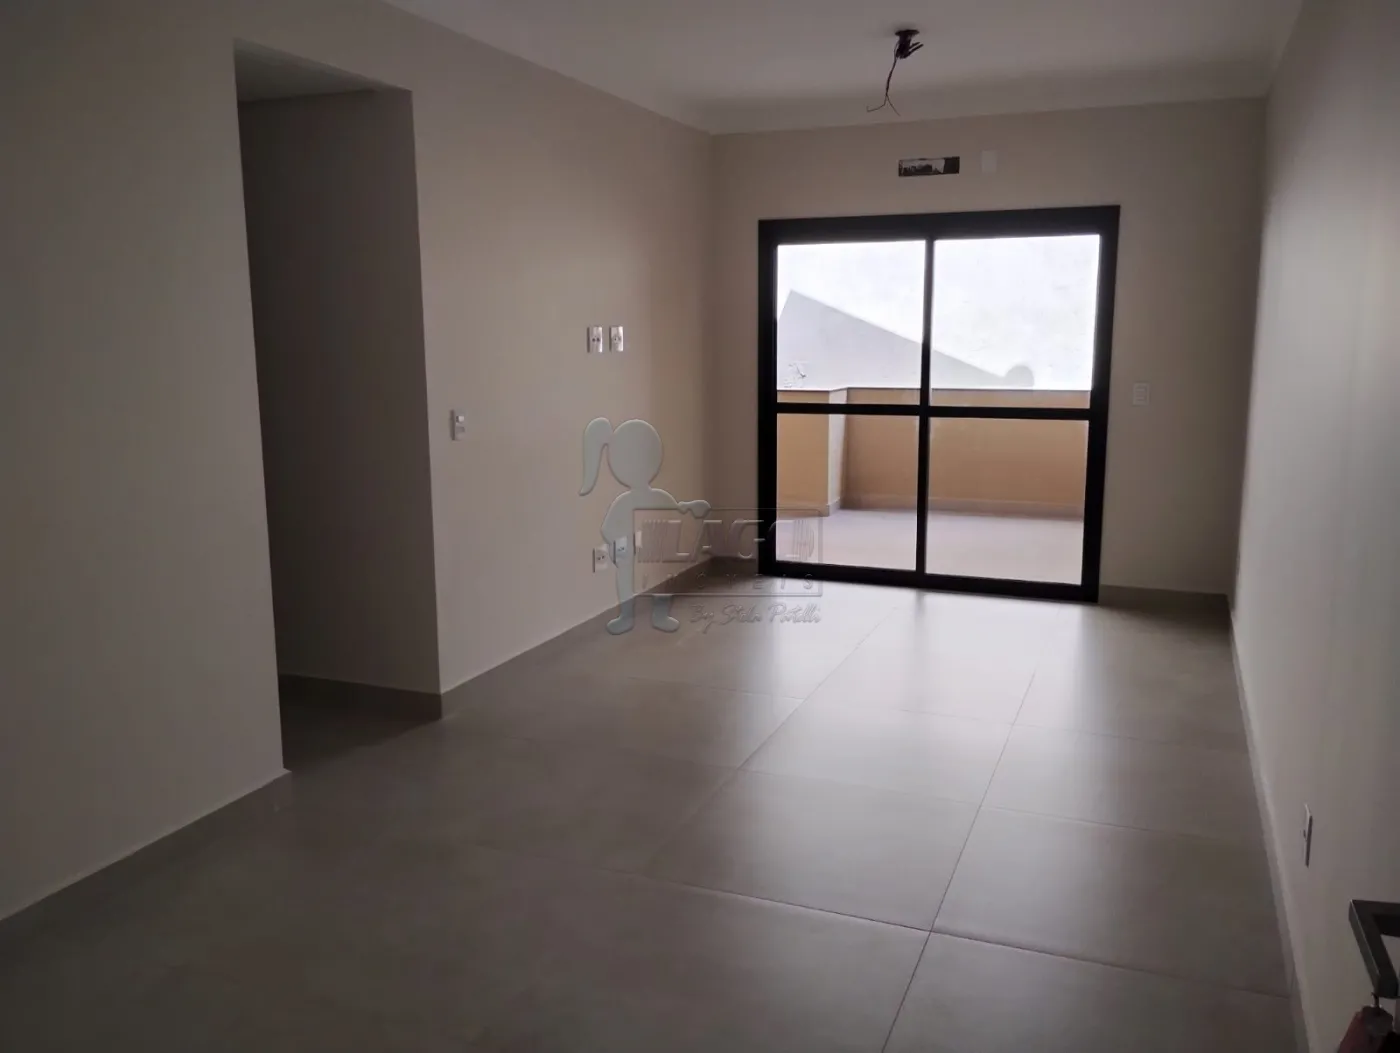 Comprar Apartamentos / Padrão em Ribeirão Preto R$ 530.000,00 - Foto 3